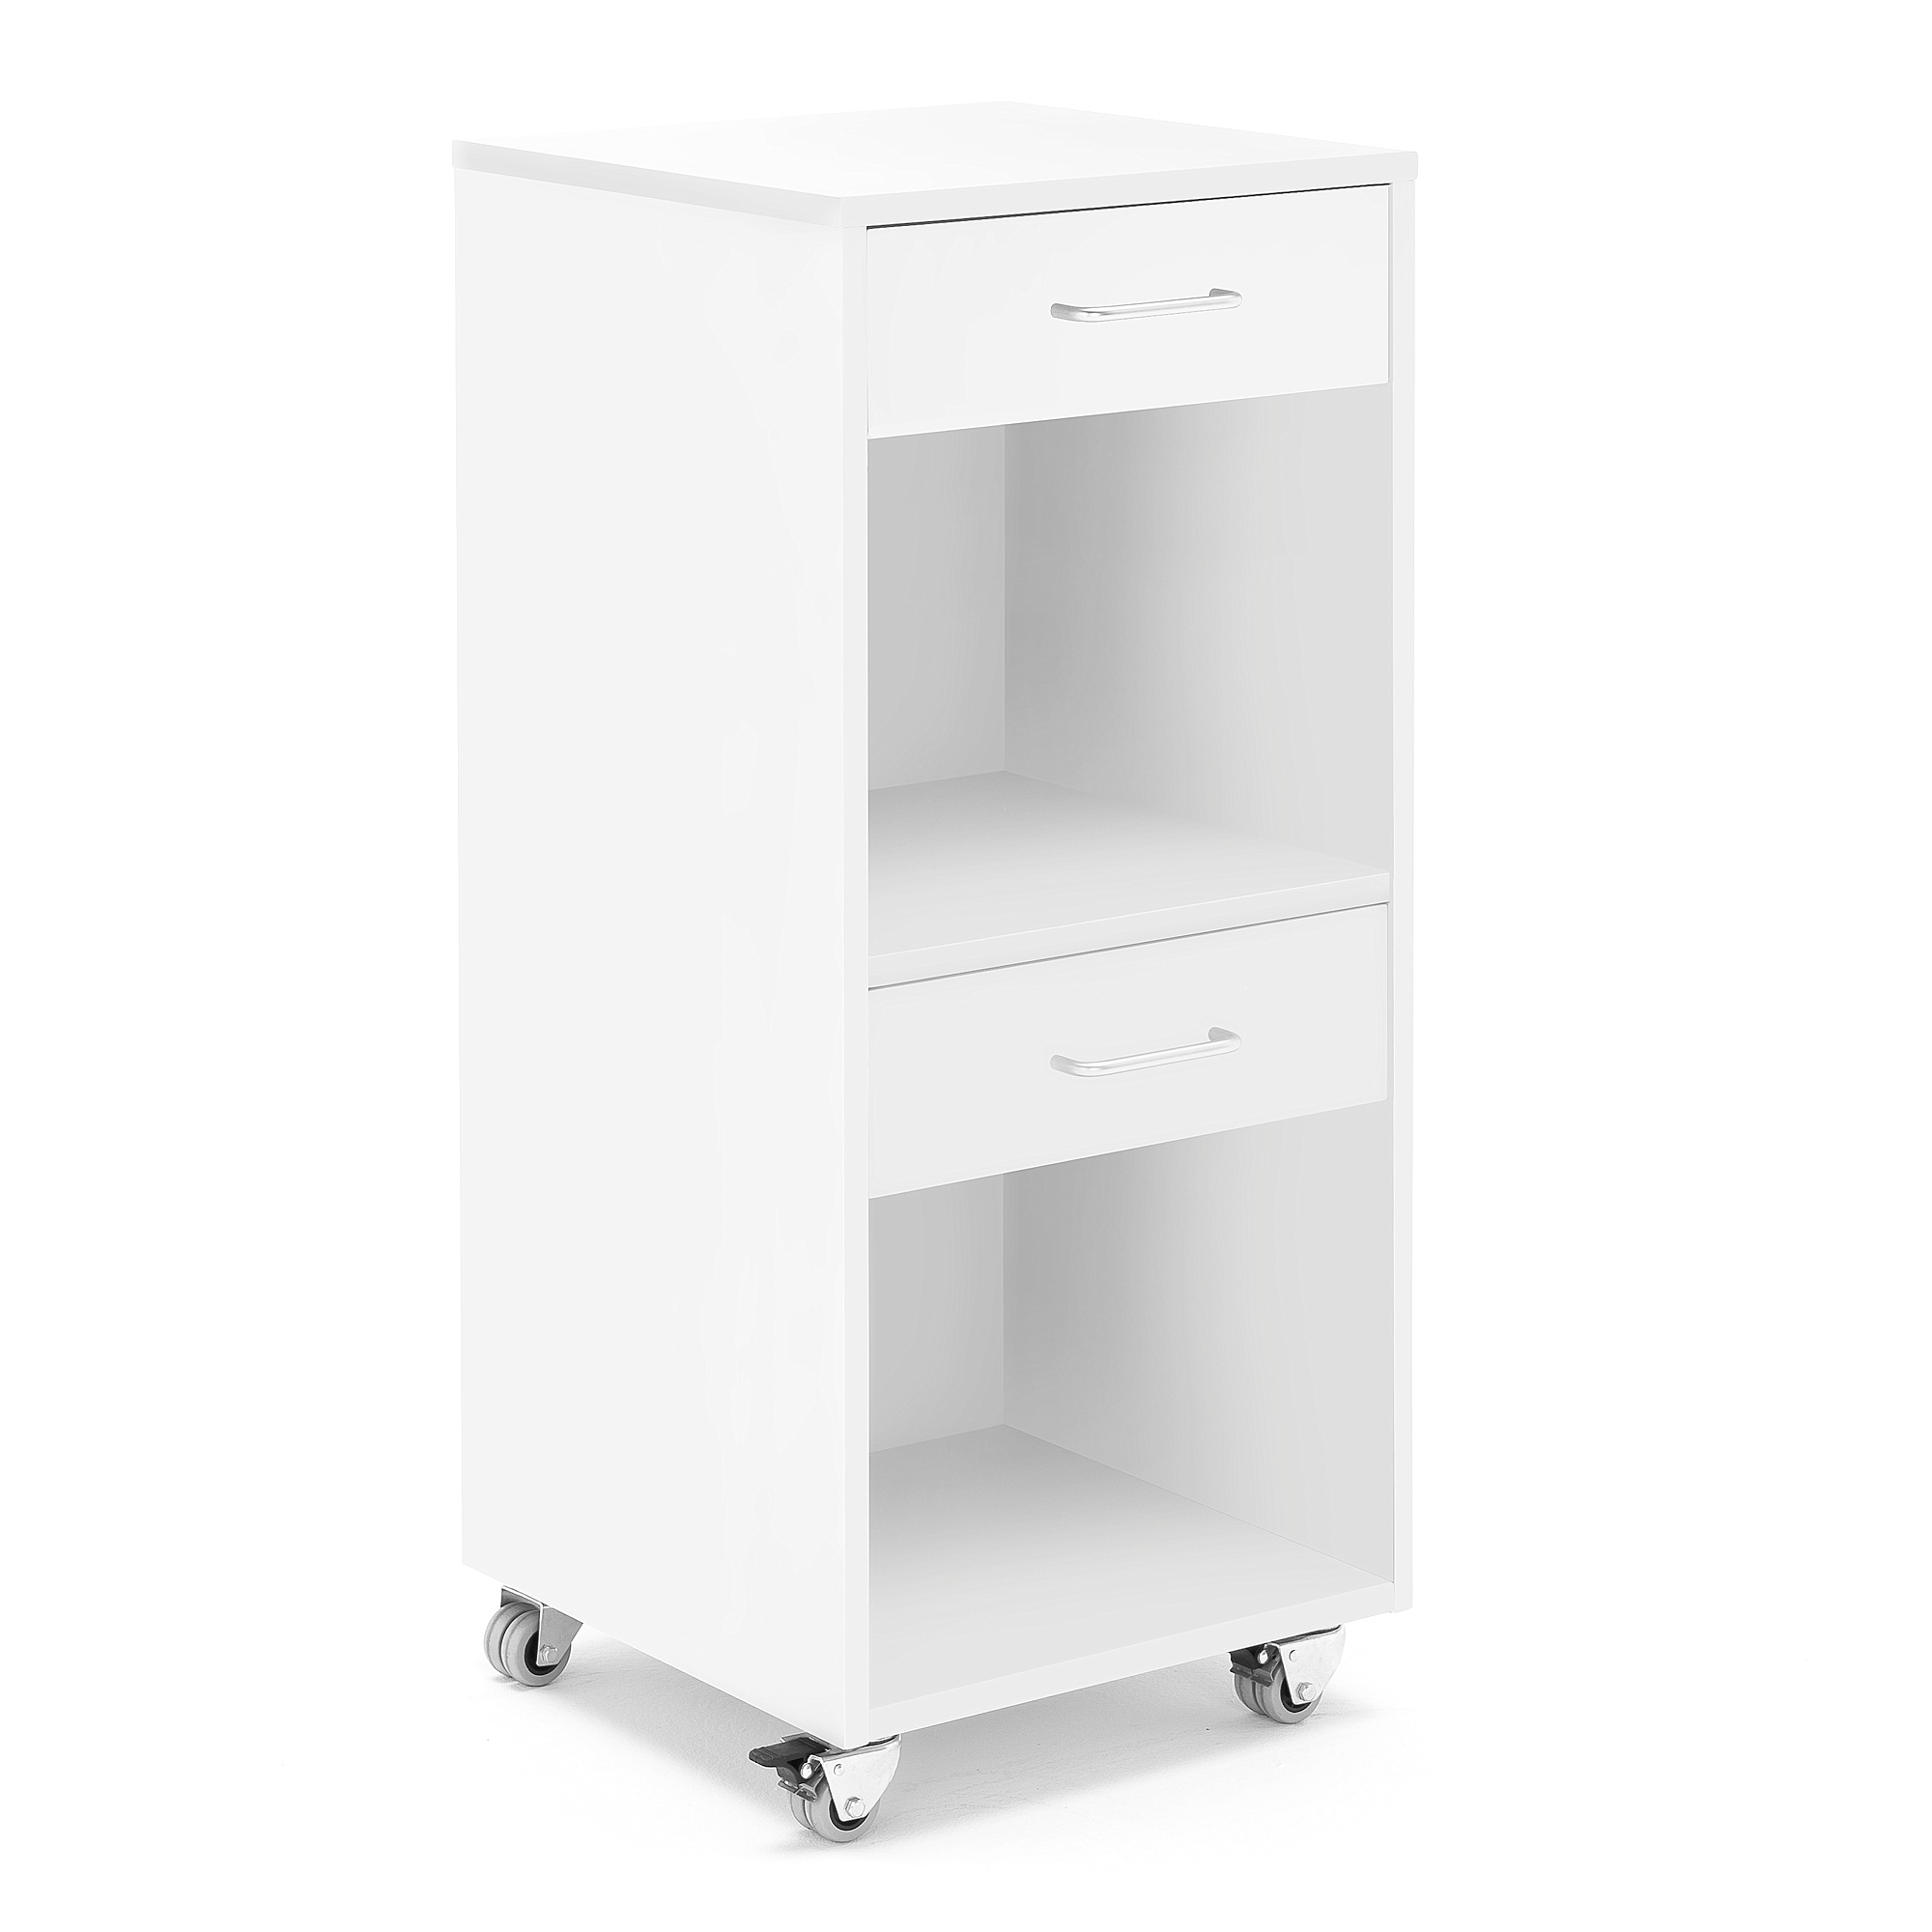 E-shop #en Teachers drawers white. Two drawers